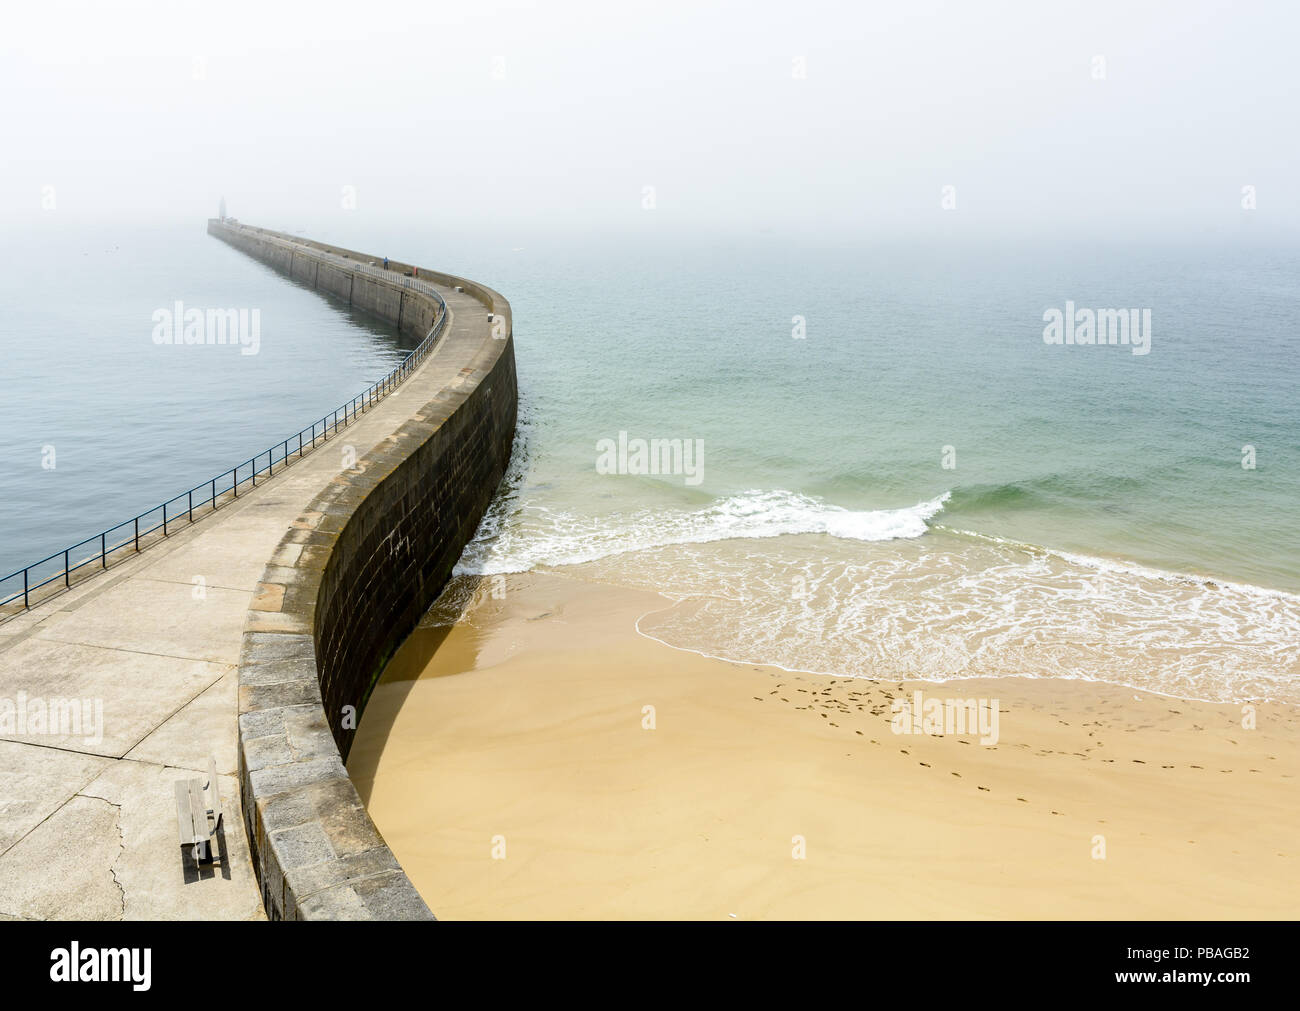 La Mole des Noires, il lungo frangiflutti delle mura di cinta della città di Saint Malo in Bretagna, Francia, e dalla Mole spiaggia da una soleggiata e nebbioso meteo. Foto Stock